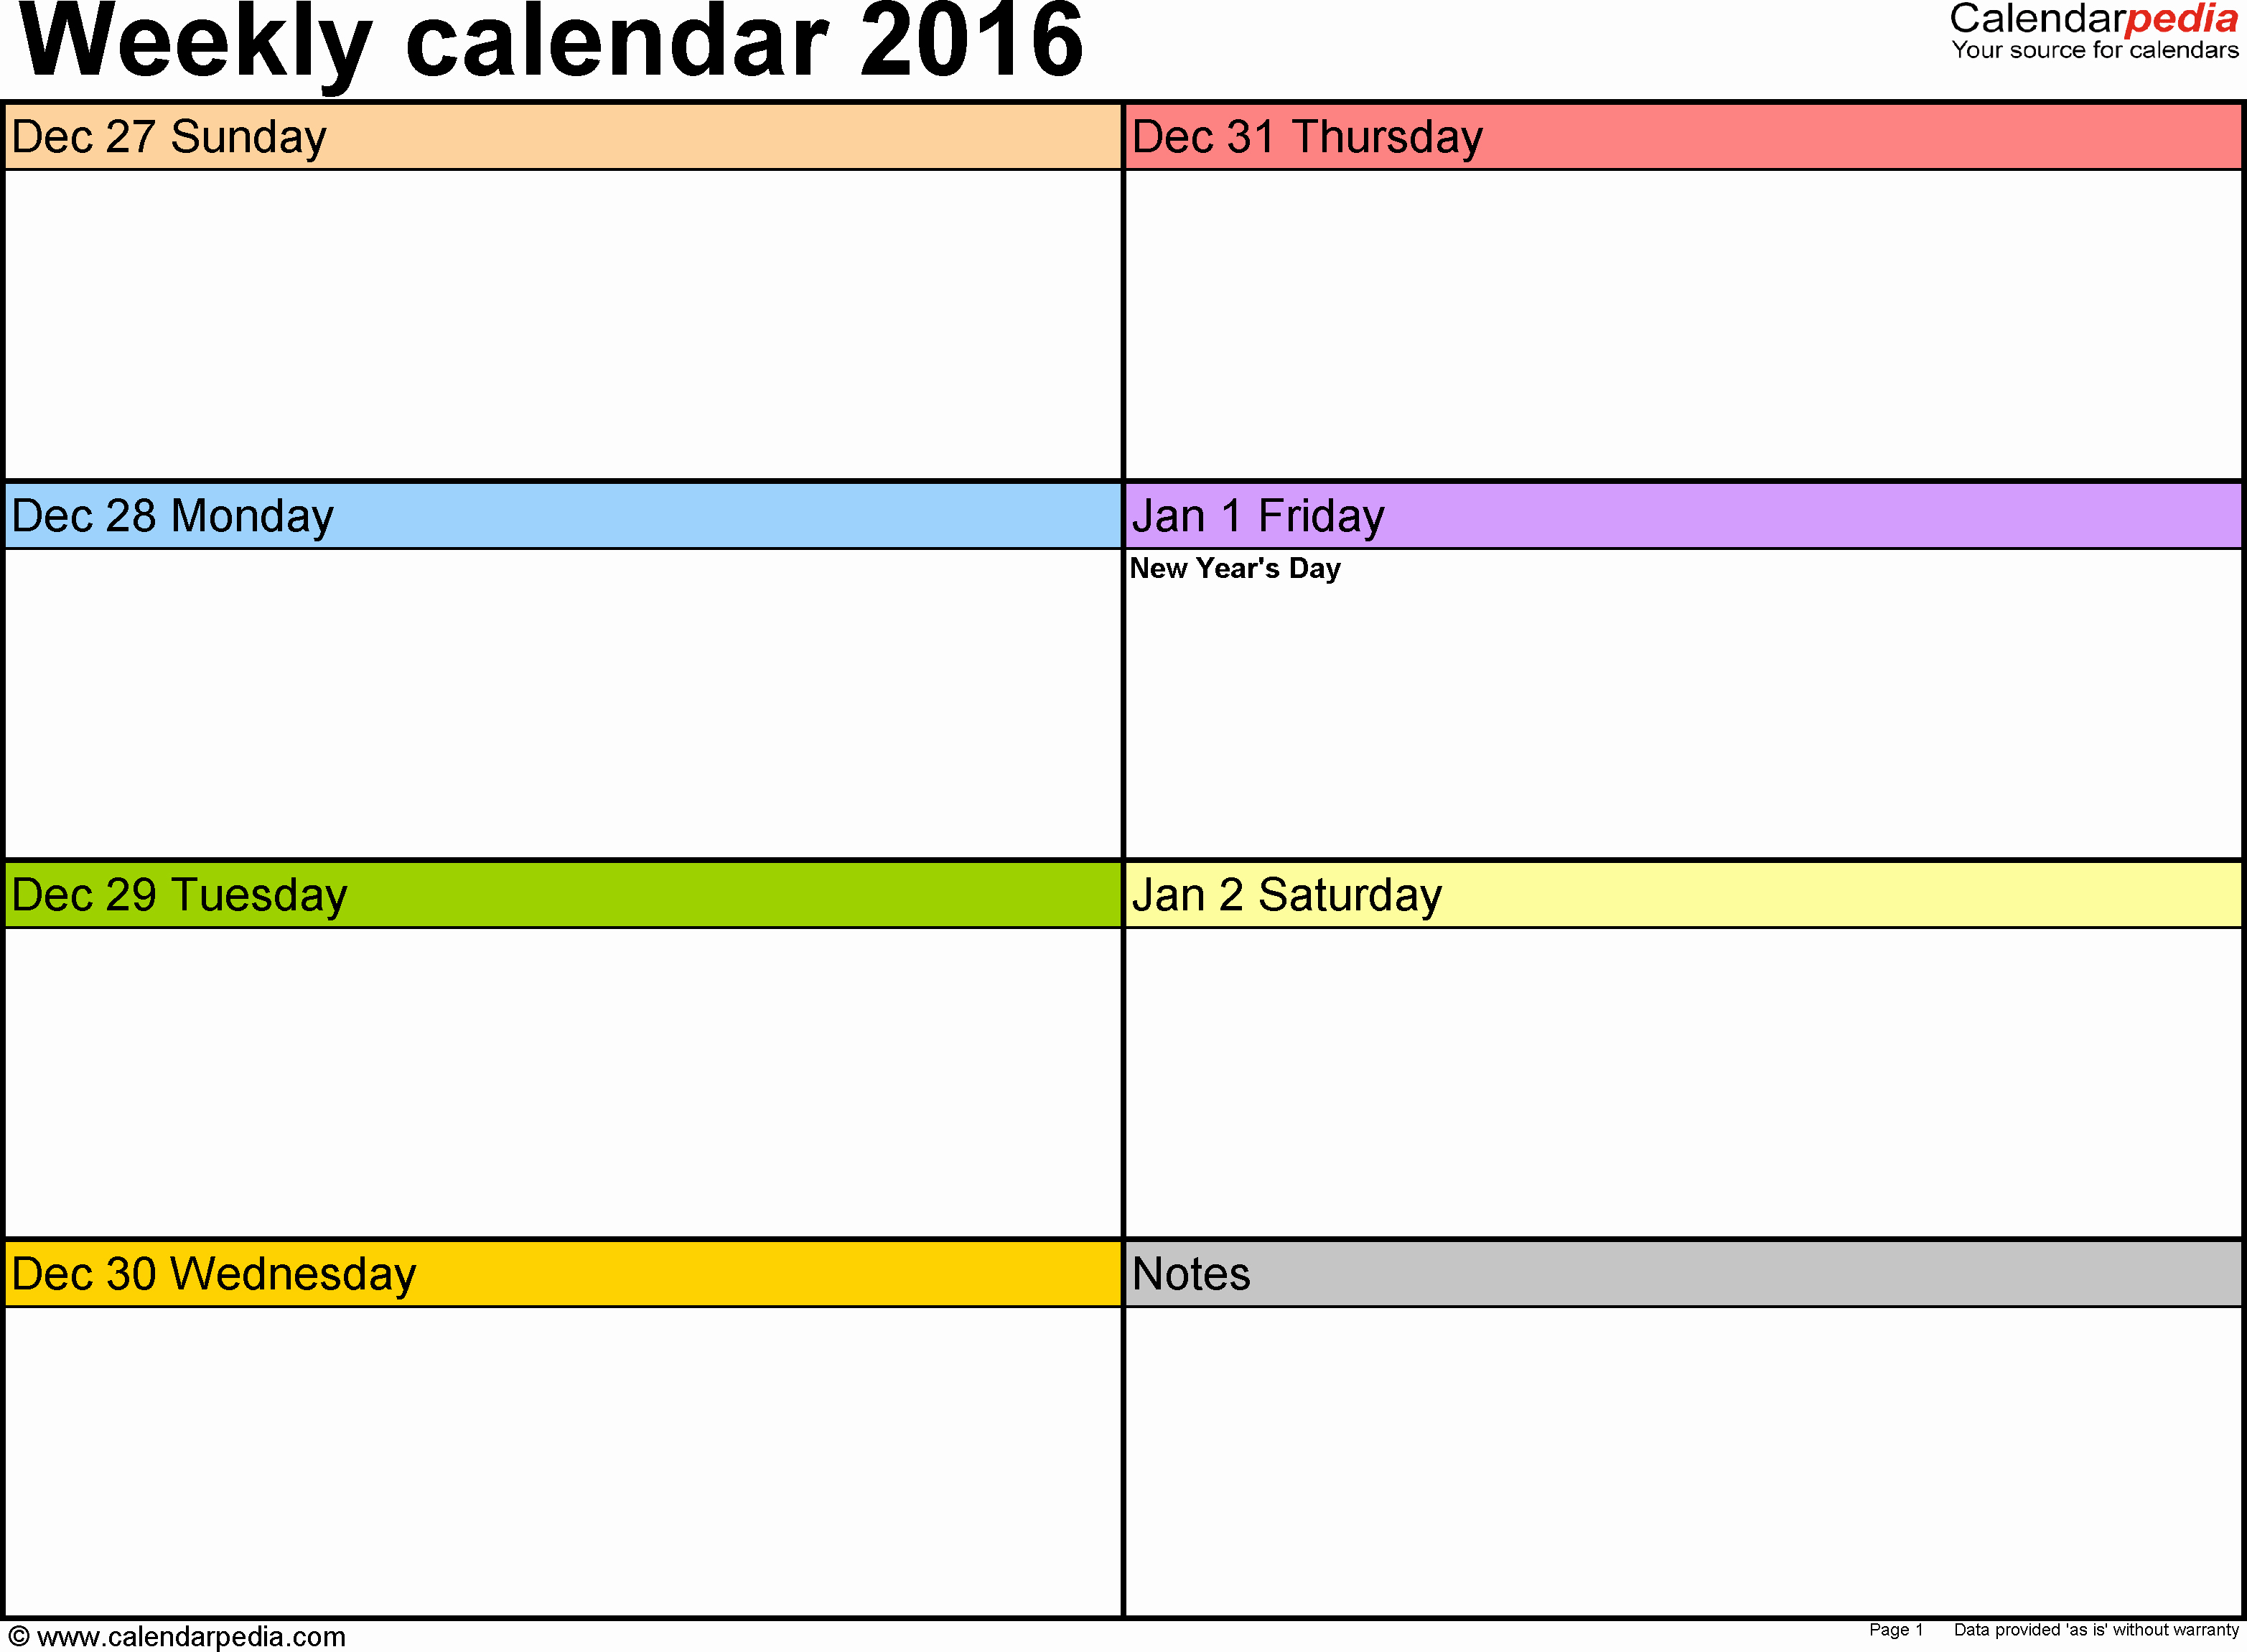 2 Week Calendar Template Word Elegant Weekly Calendar 2016 for Word 12 Free Printable Templates